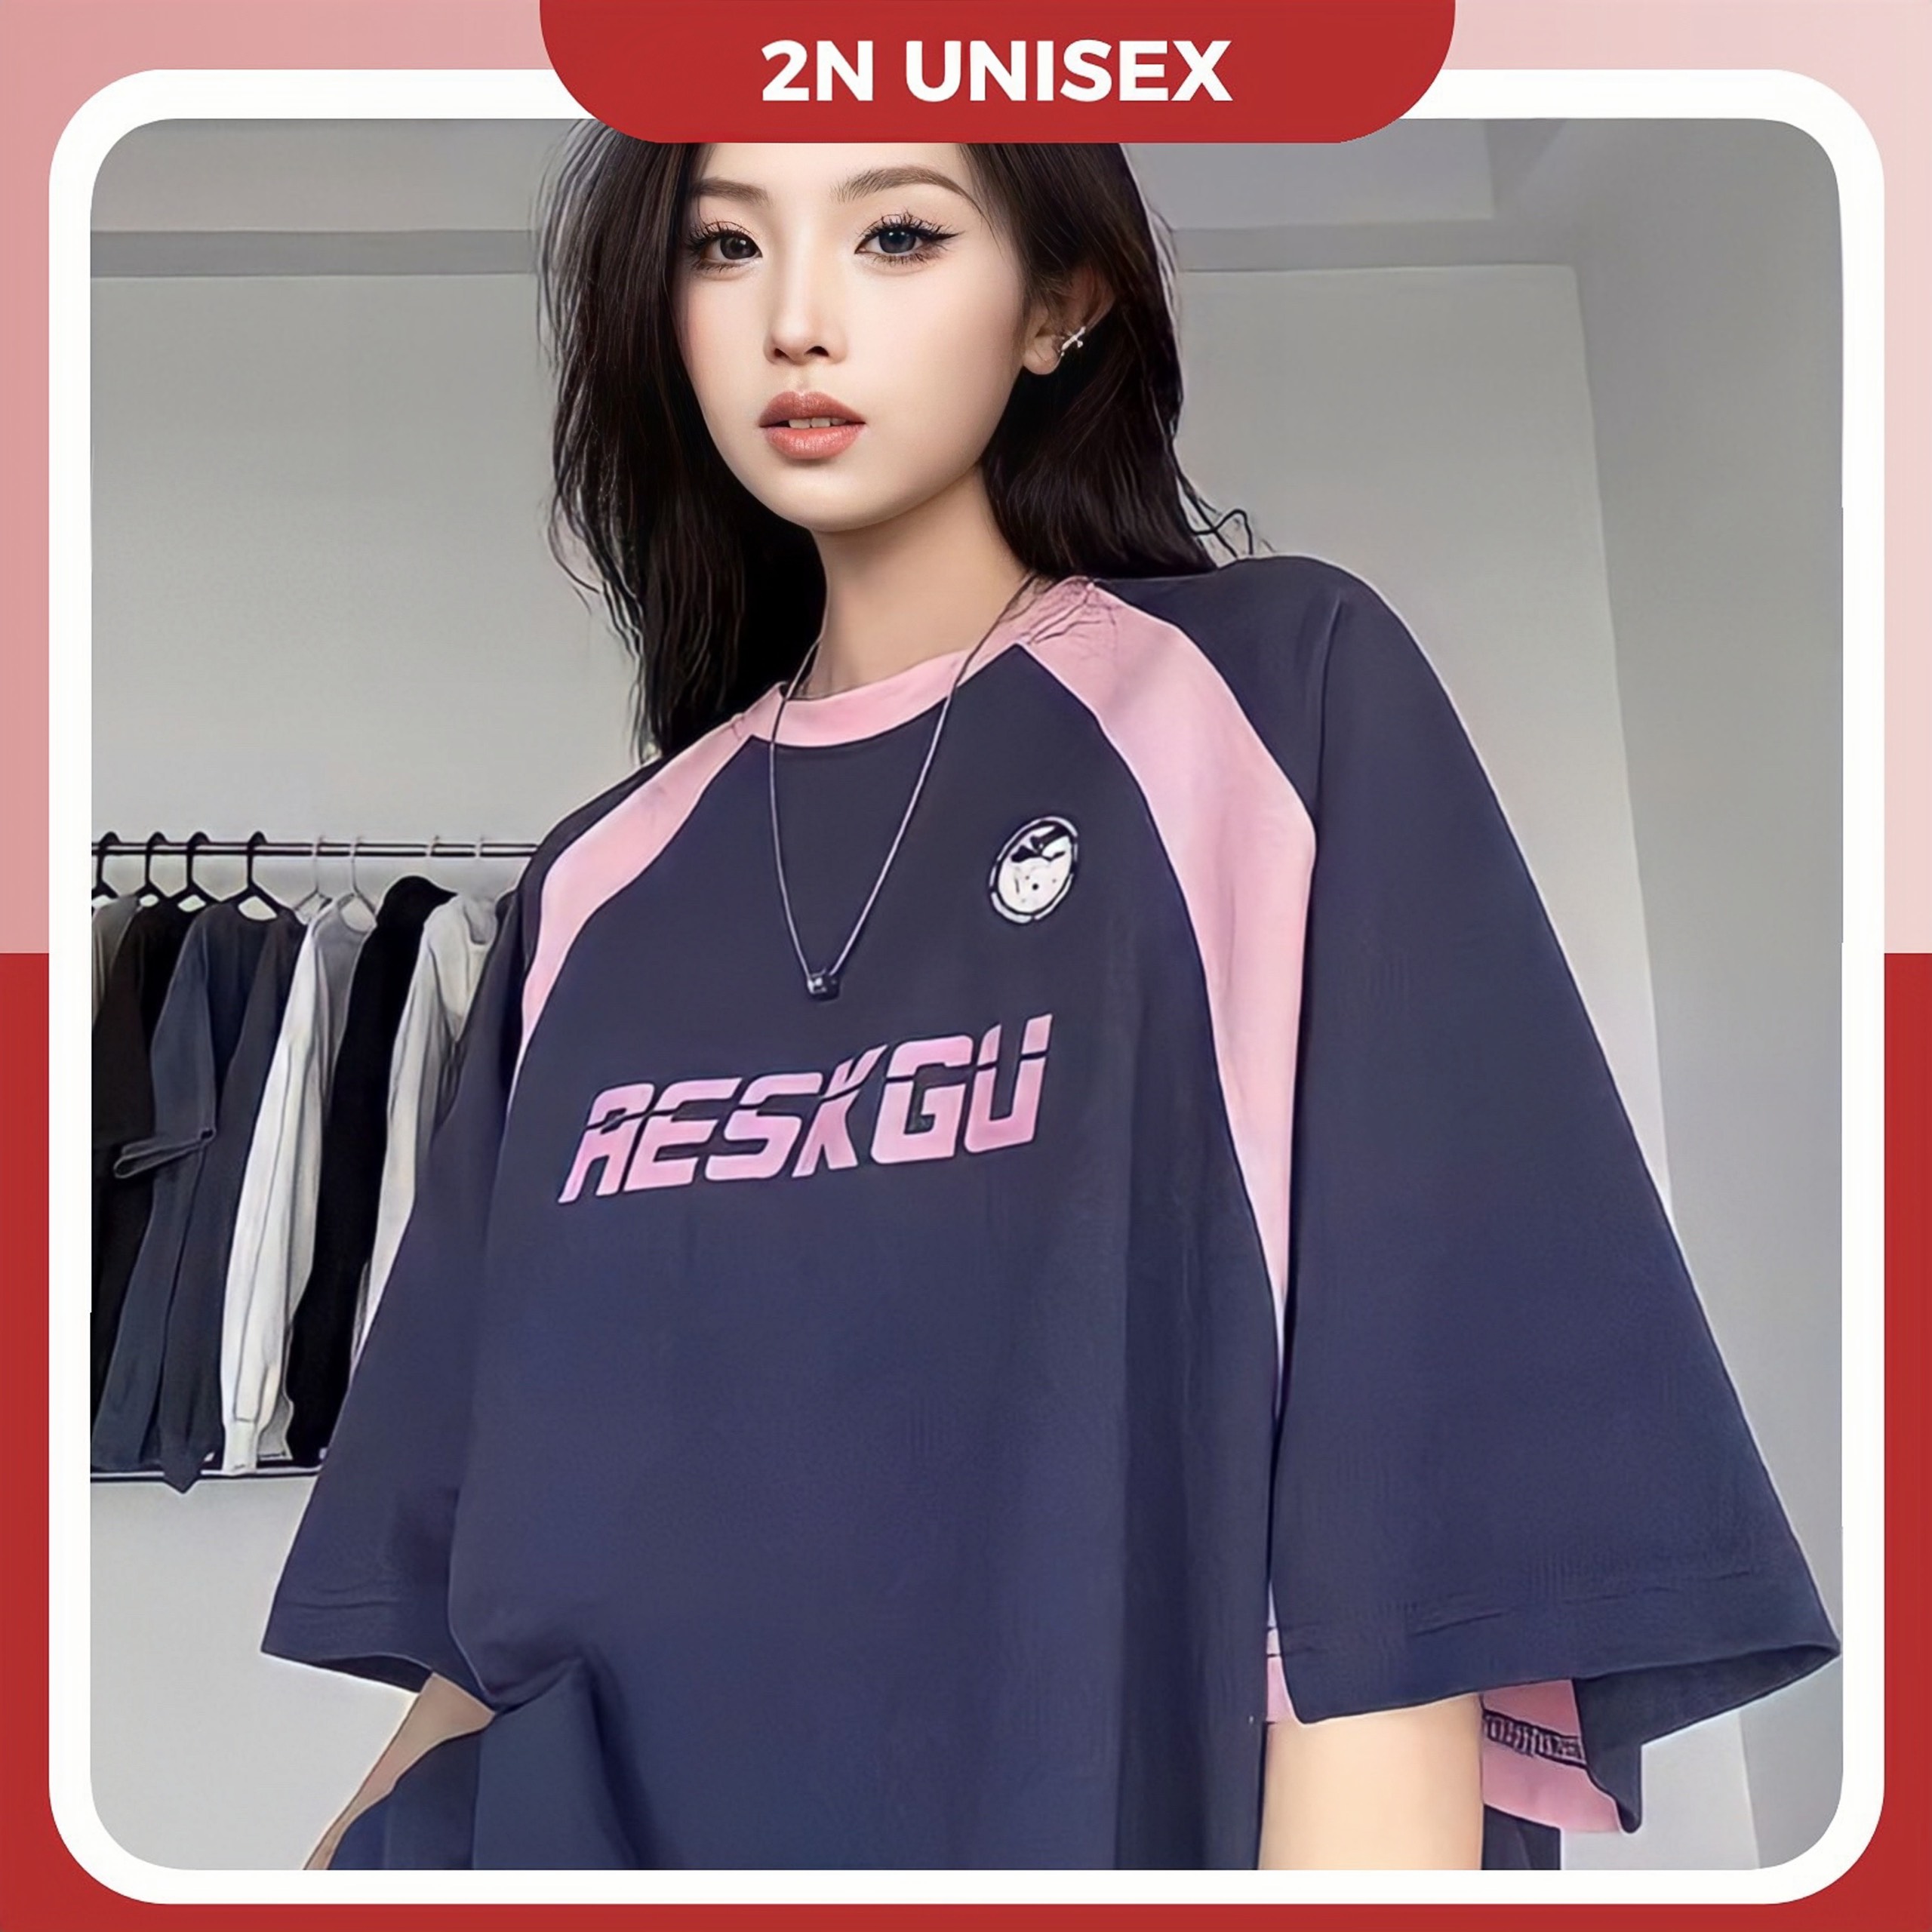 Áo phông nam nữ form rộng 2N Unisex blokecore Aeskgu phối màu đen/hồng/nâu